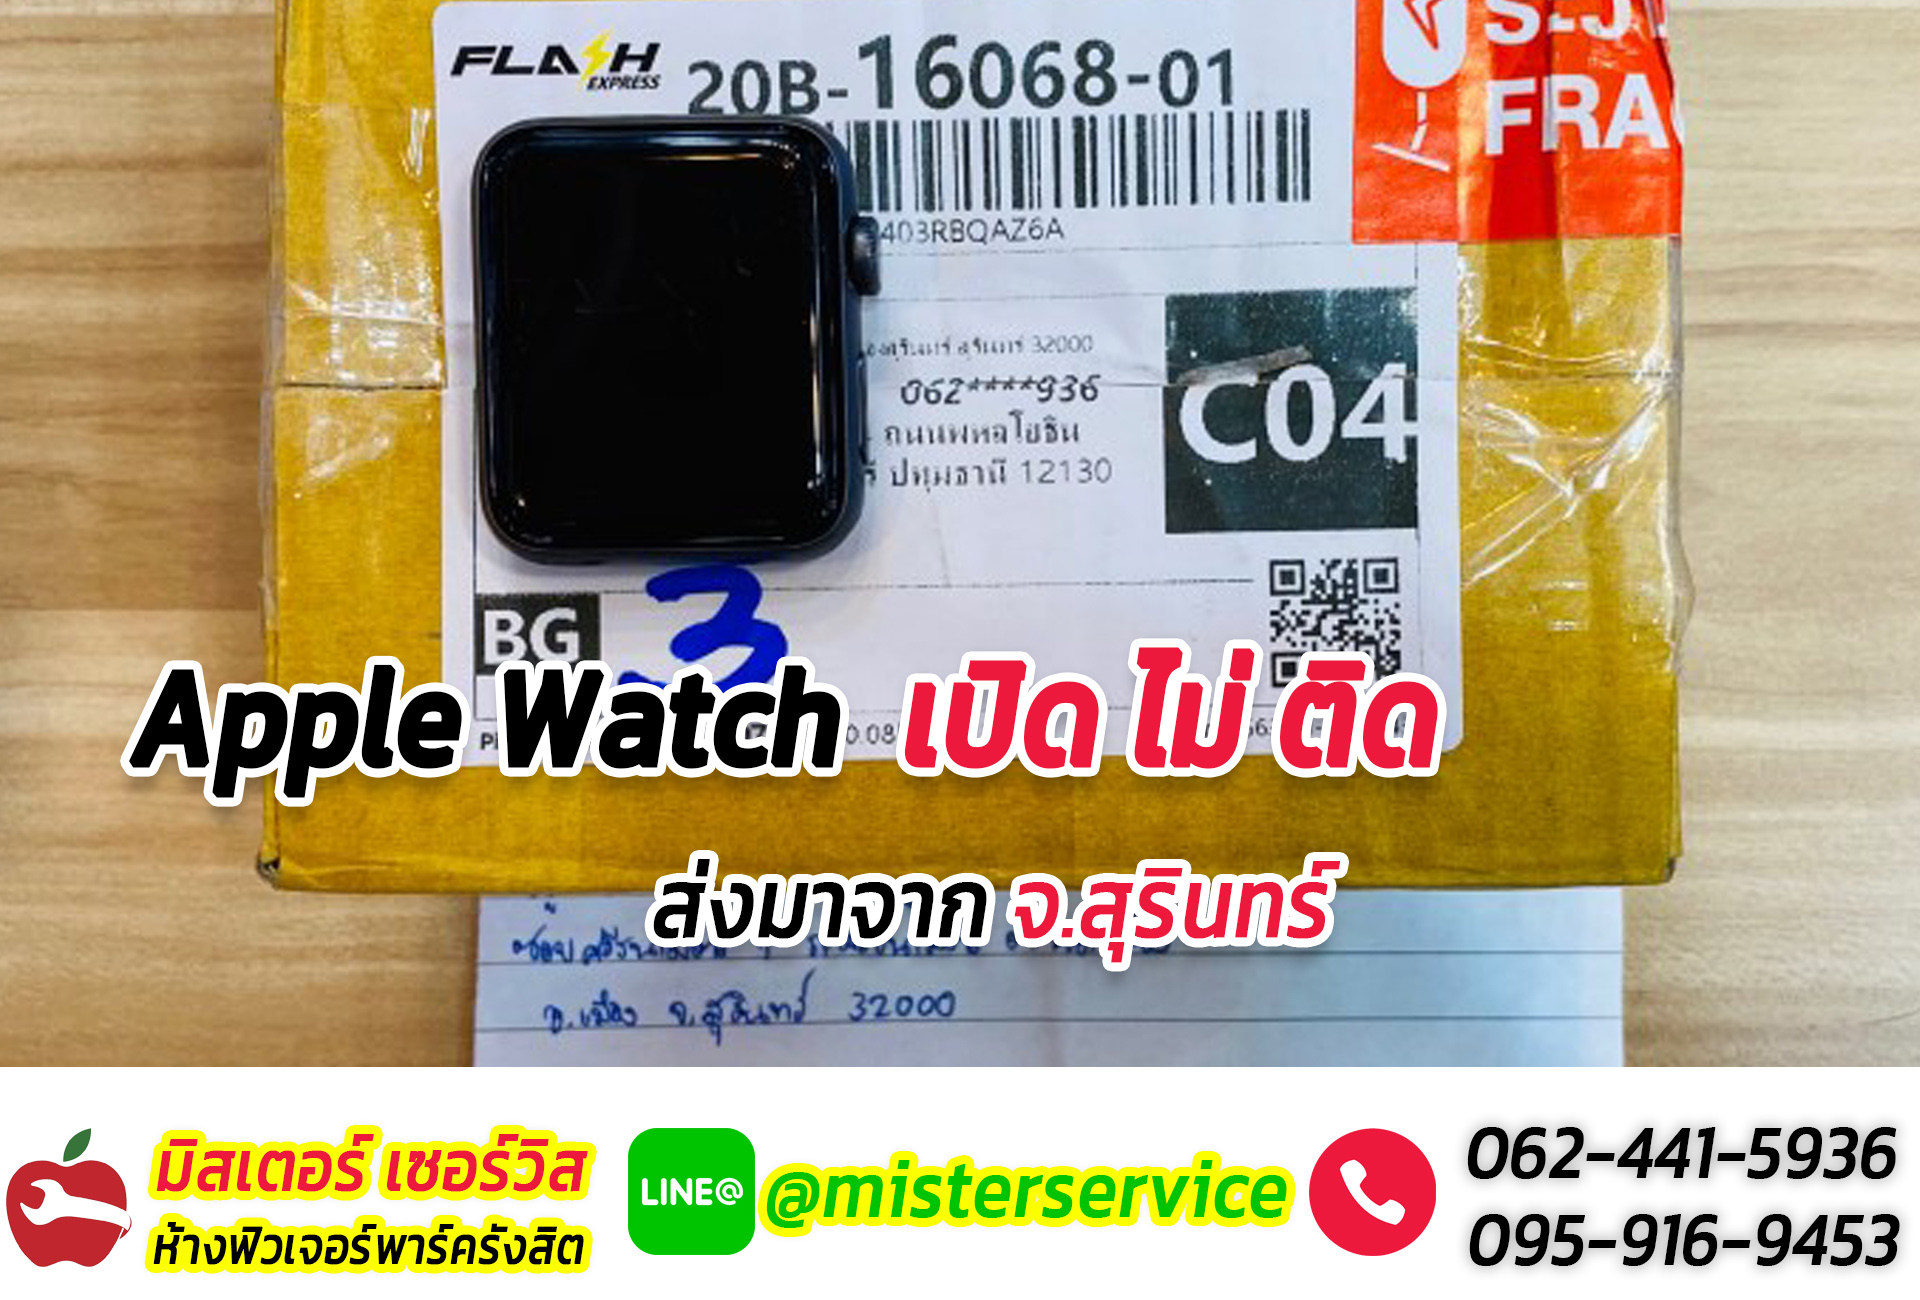 ซ่อม Apple Watch มหาสารคาม